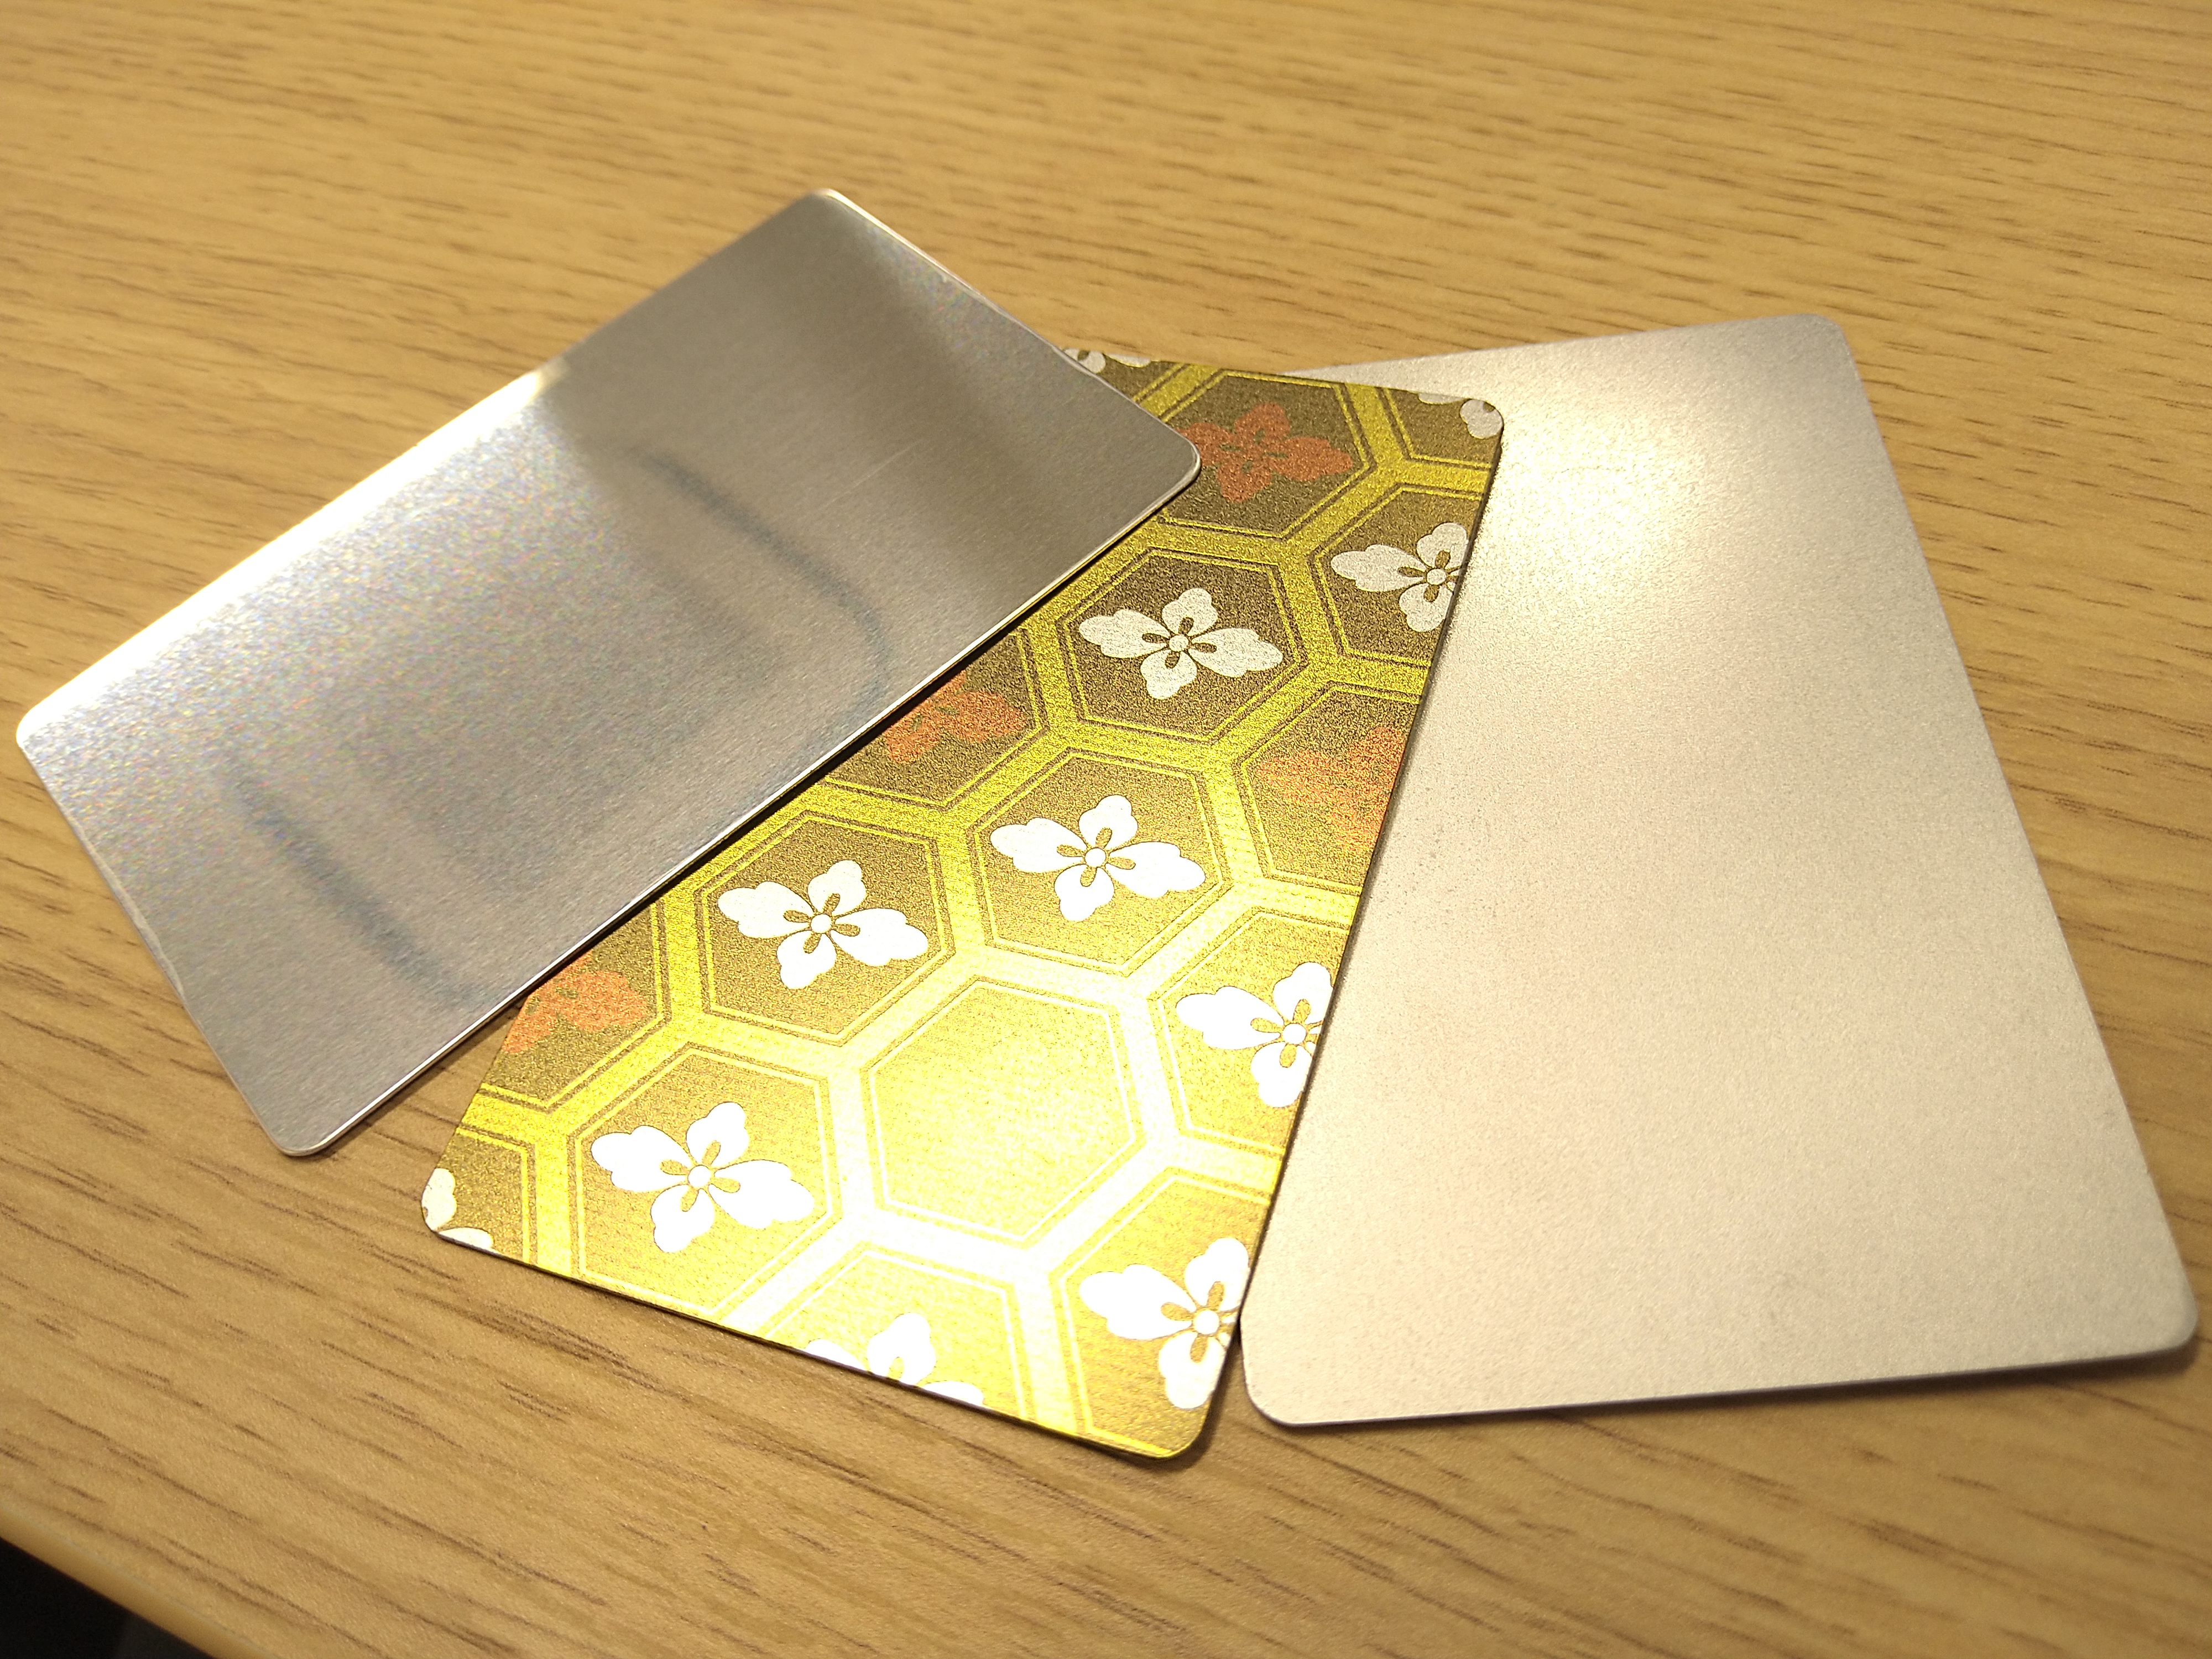 メタルカードの素材にアルミ（AL）が追加されました。